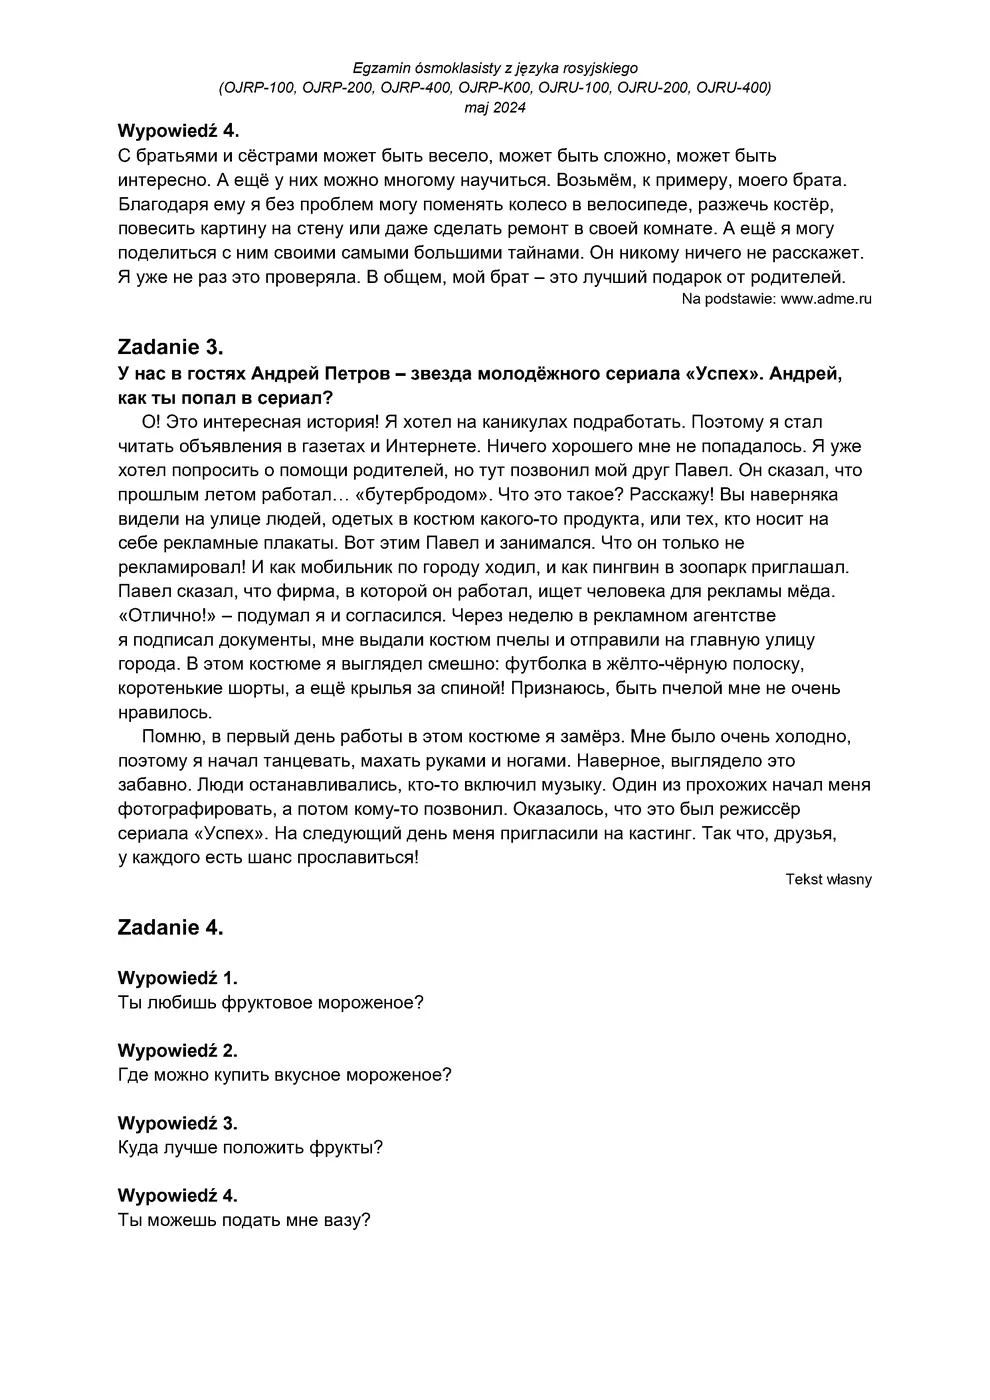 transkrypcja - rosyjski - egzamin ósmoklasisty 2024 - 0003